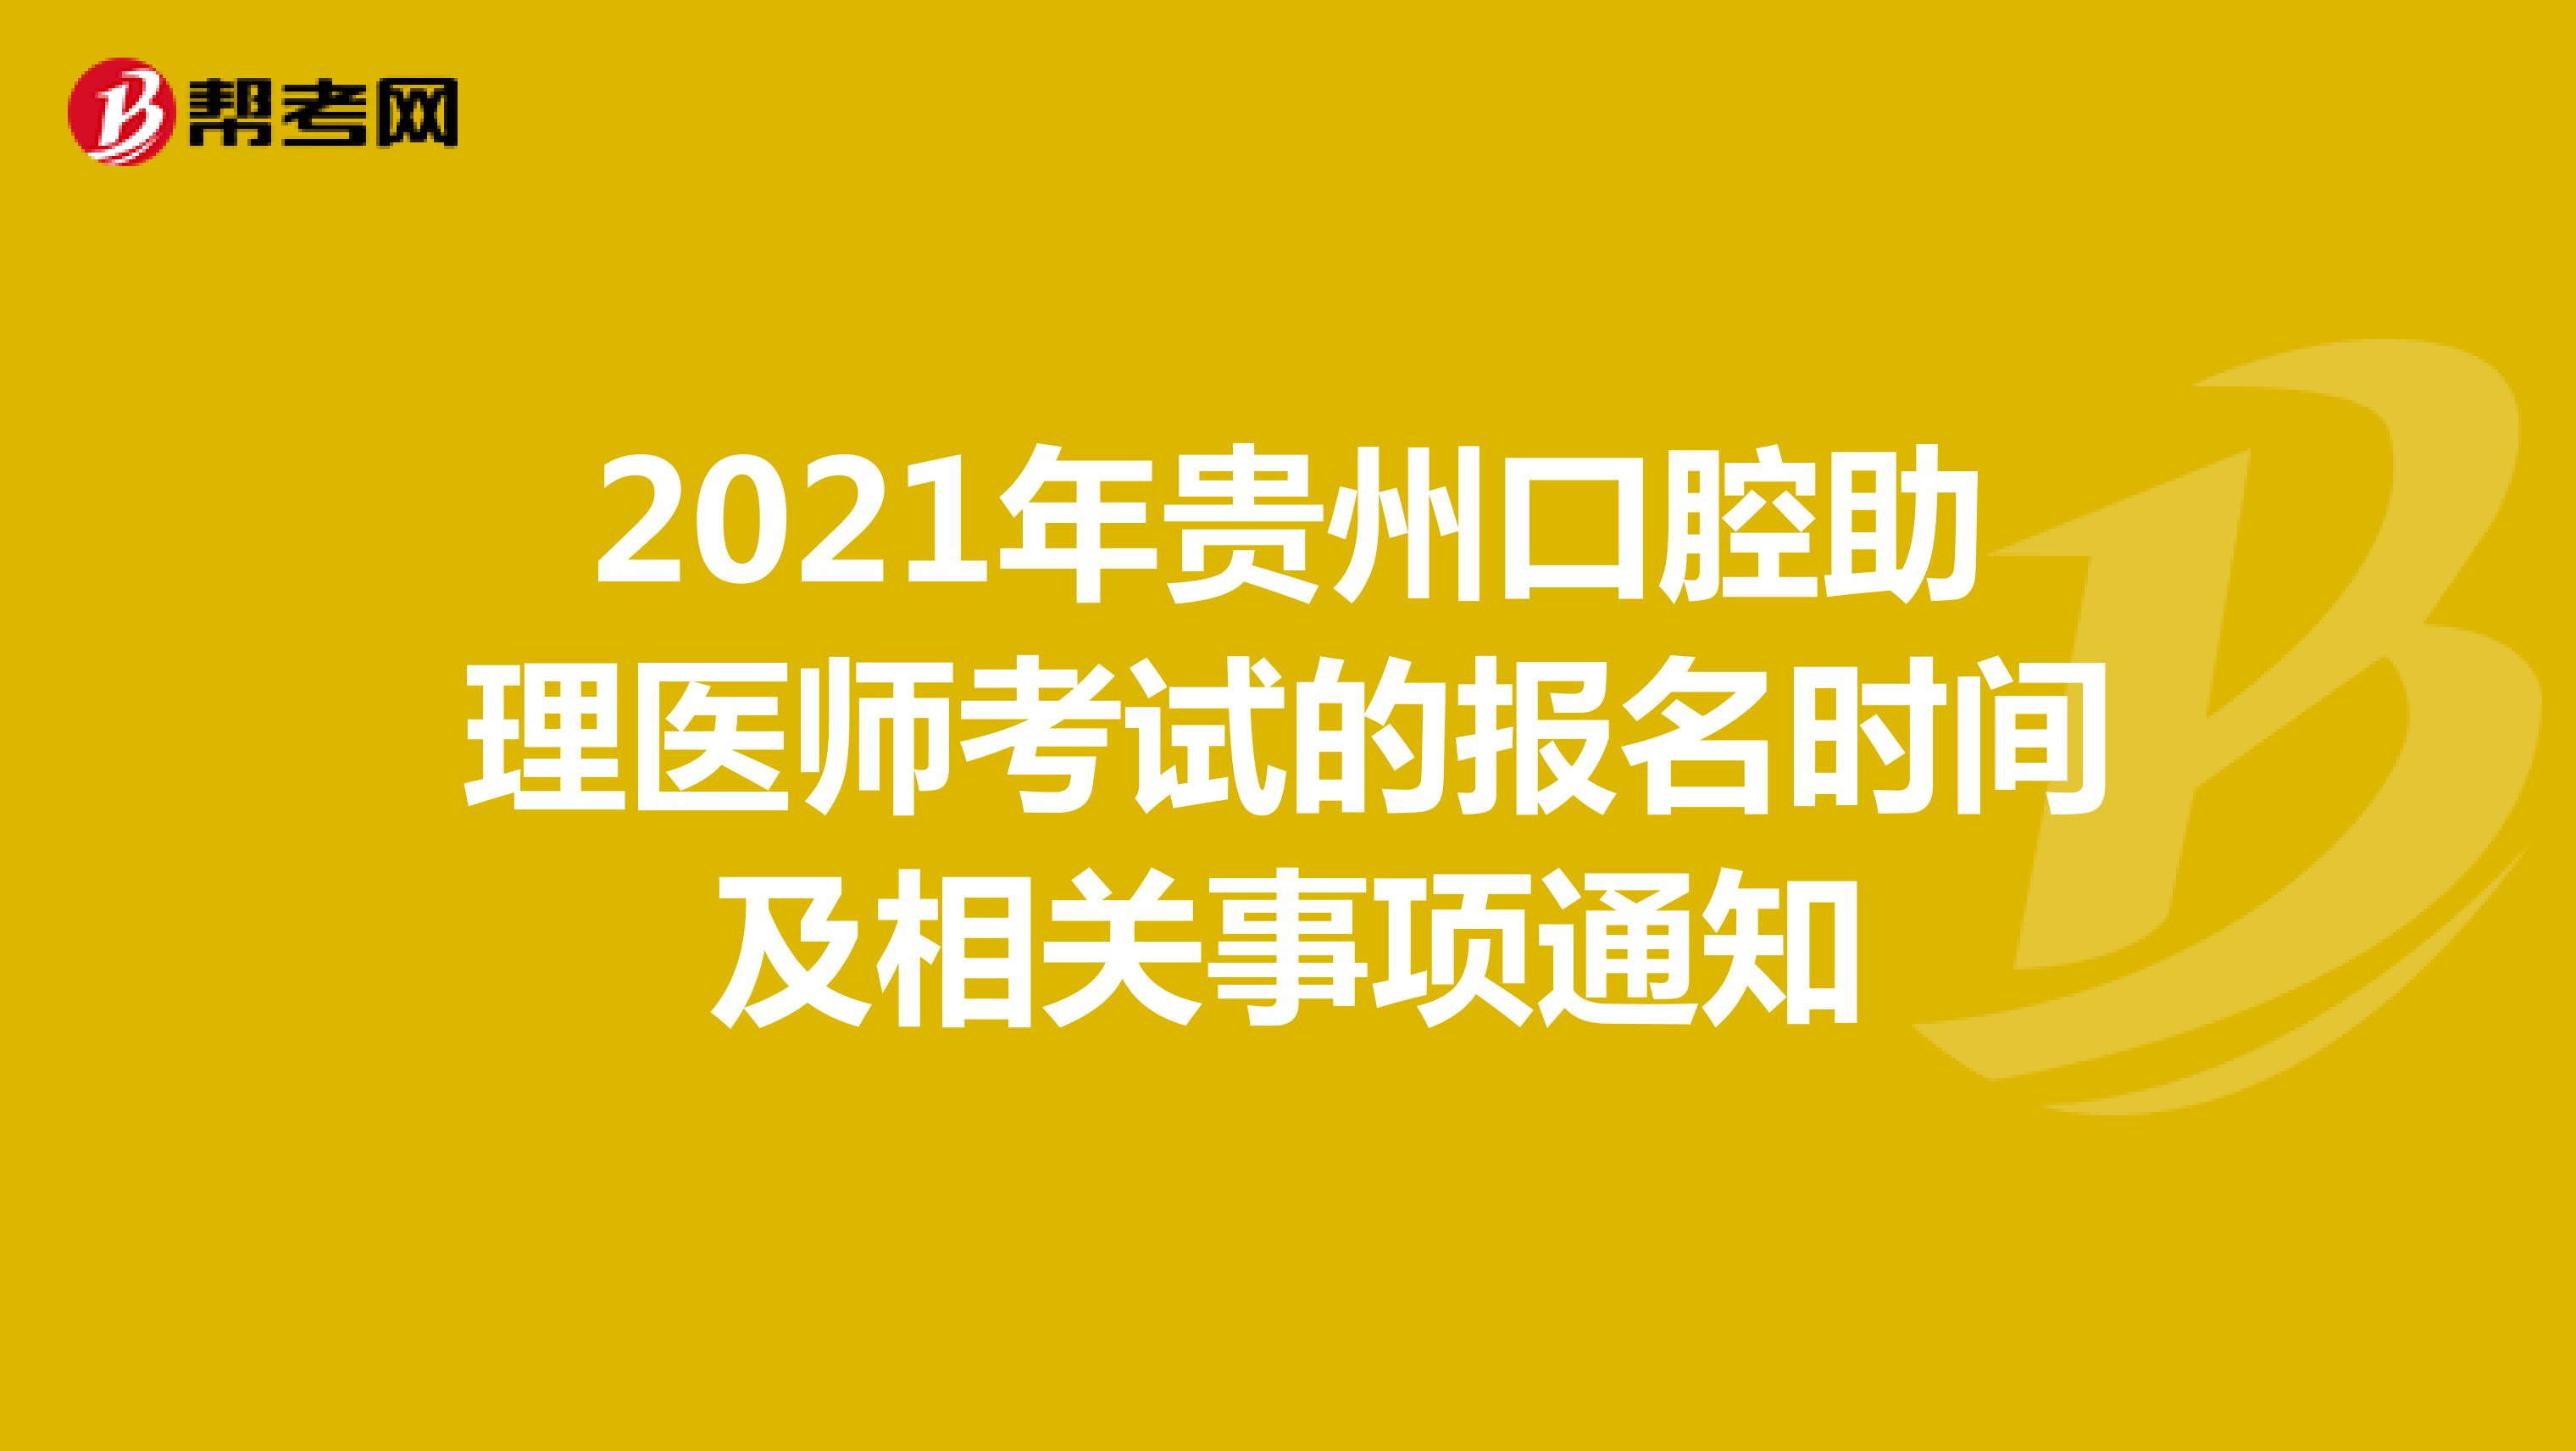 2021年贵州口腔助理医师考试的报名时间及相关事项通知